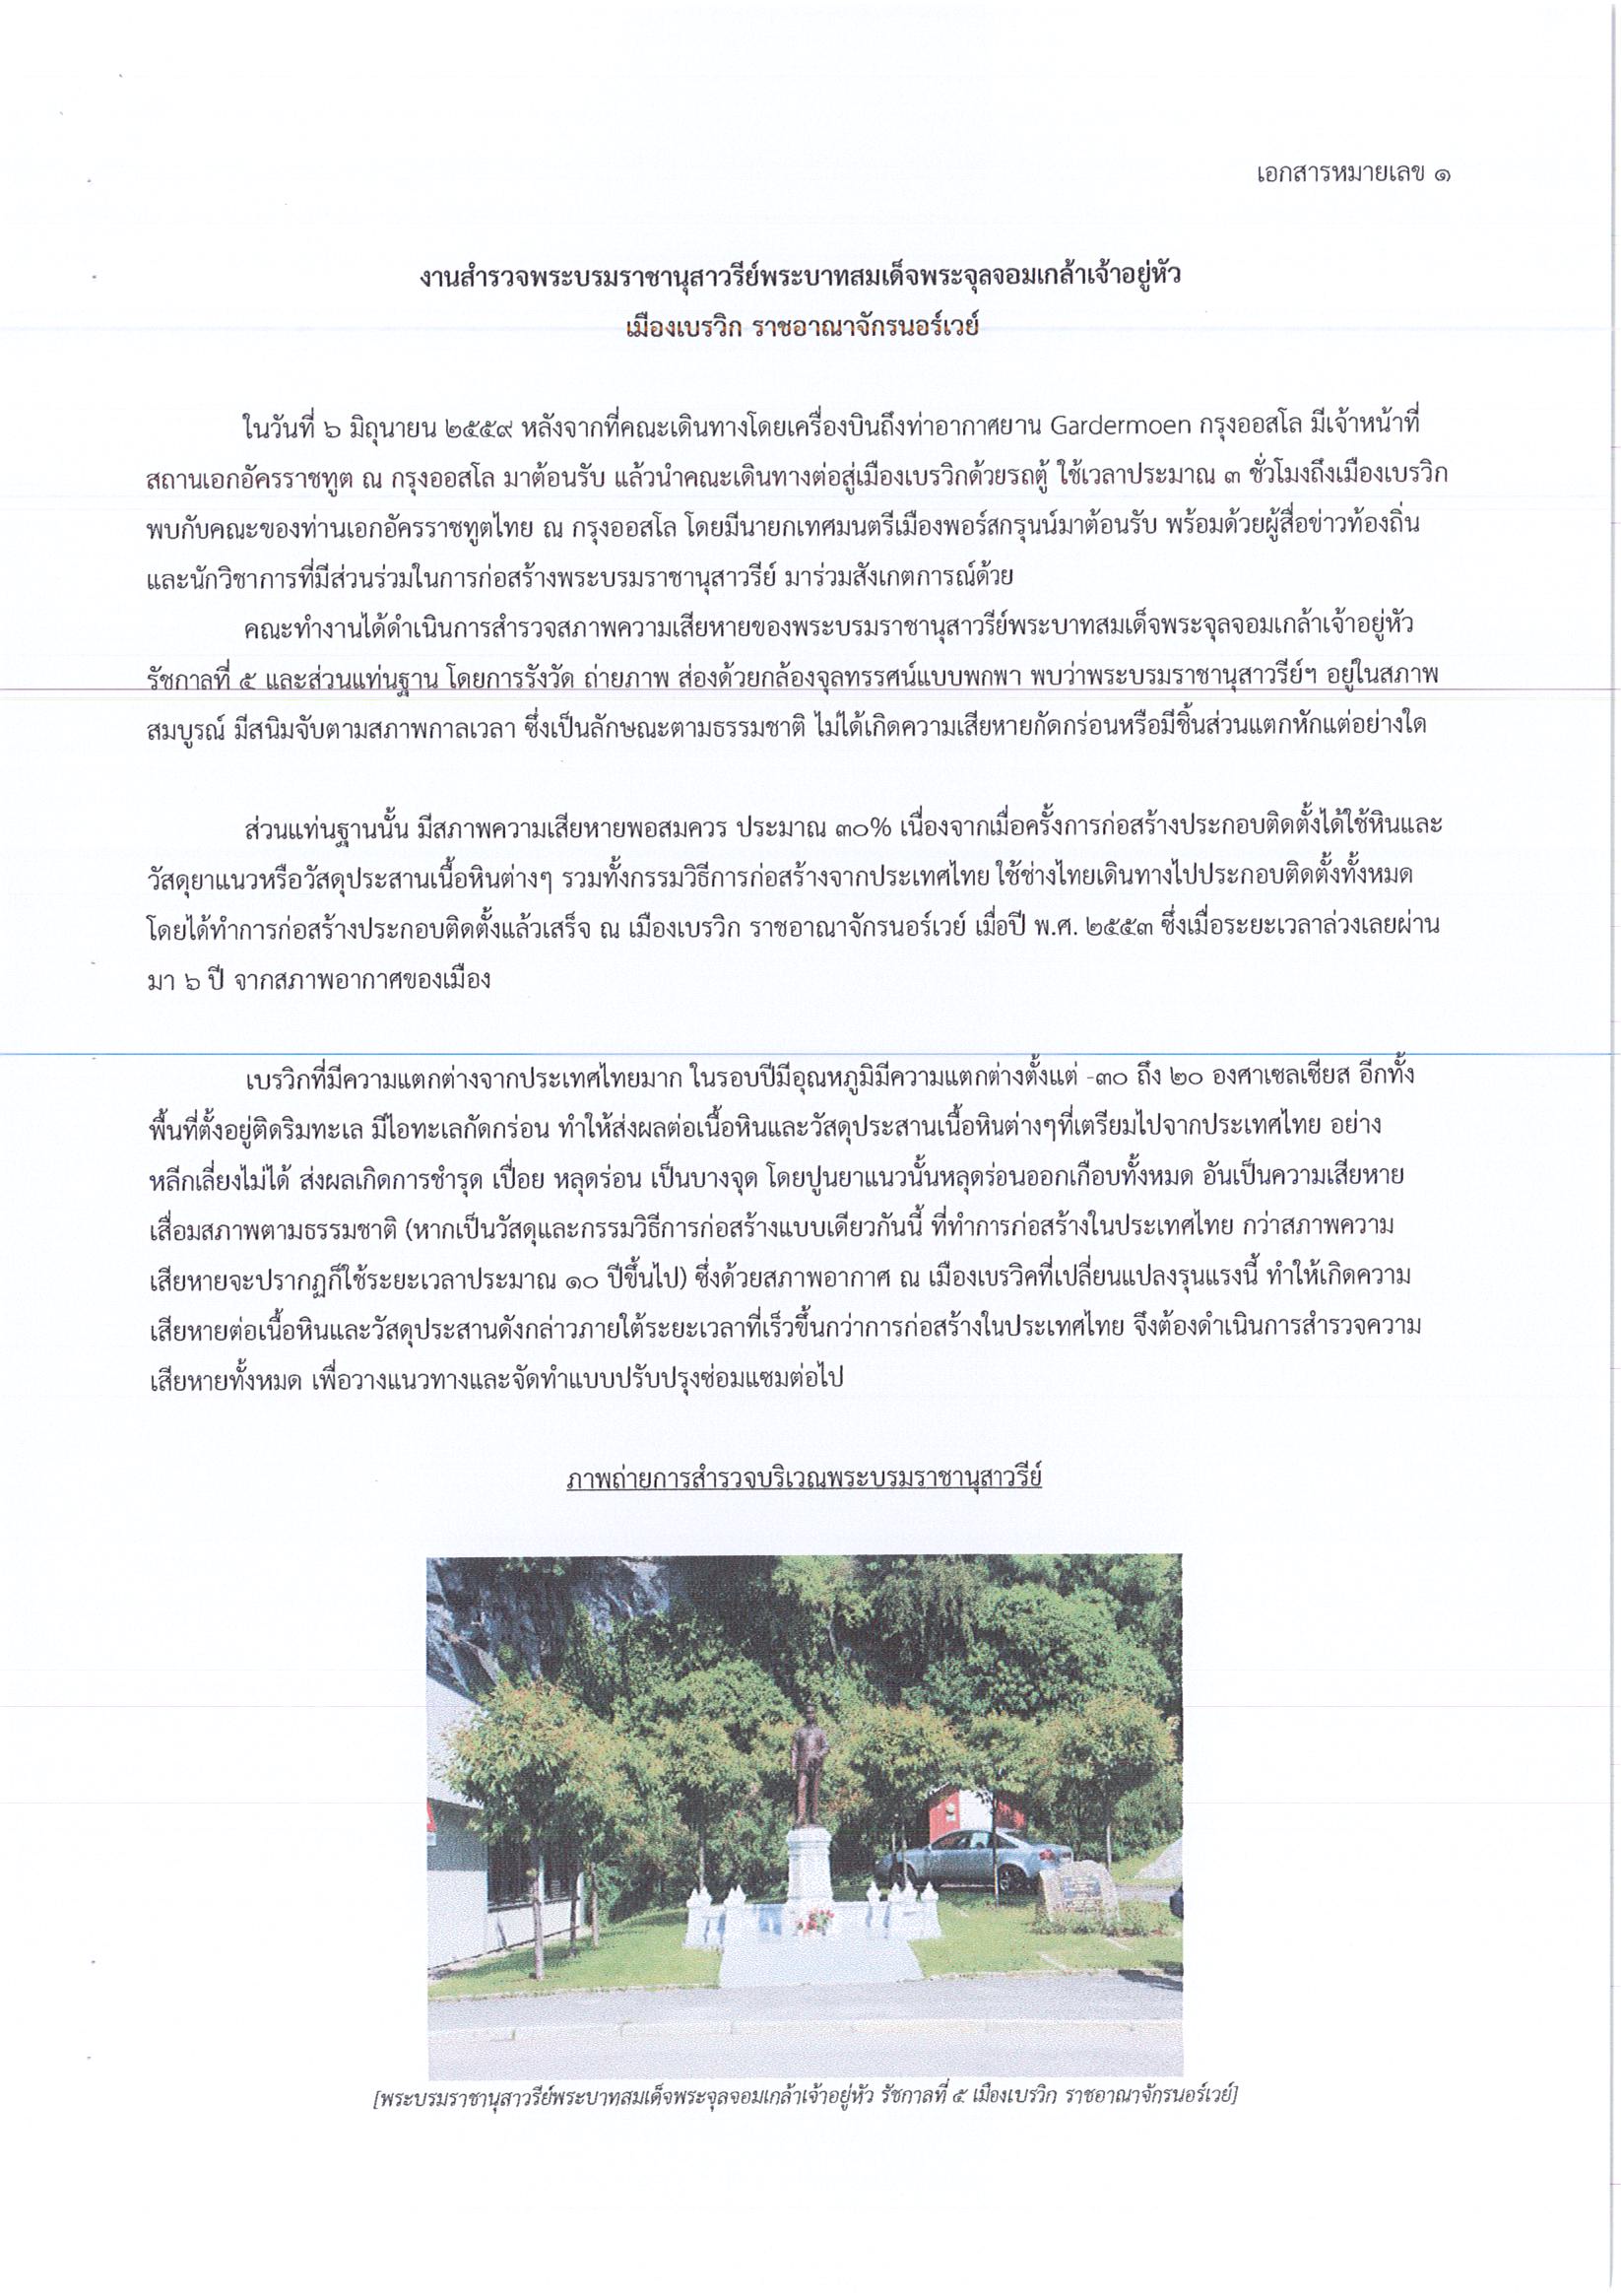 รายงานการเดินทางไปราชการ ณ ราชอาณาจักรนอร์เวย์ ระหว่างวันที่ 6 – 13 มิถุนายน 2559 โครงการสำรวจสภาพในพิพิธภัณฑสถานไทย ณ เมืองนอร์ดแคปป์ และสำรวจพระบรมราชานุสาวรีย์พระบาทสมเด็จพระจุลจอมเกล้าเจ้าอยู่หัว ณ เมืองเบรวิก